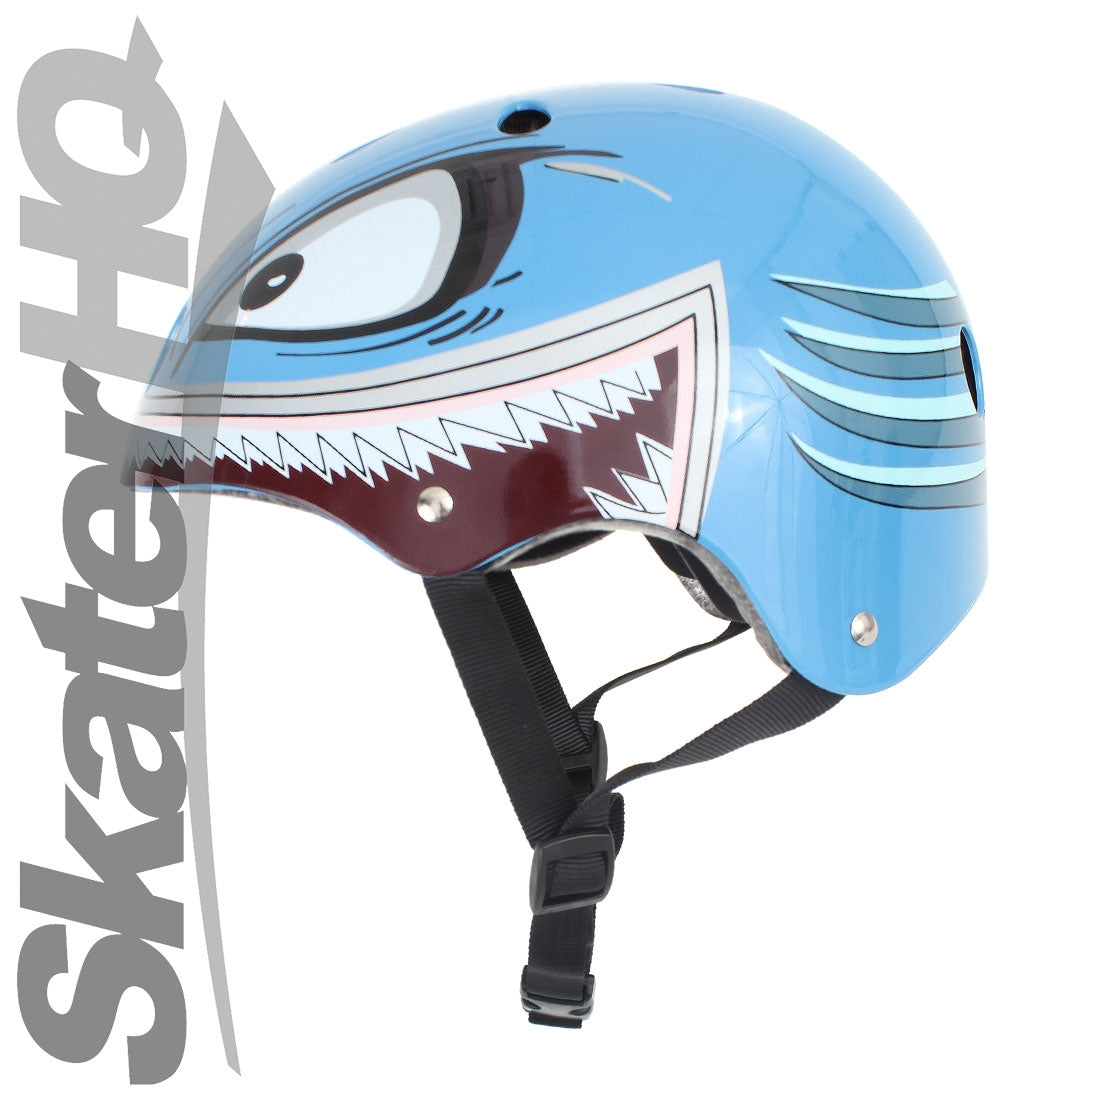 Hornit Lids Hammerhead Helmet - Small Helmets